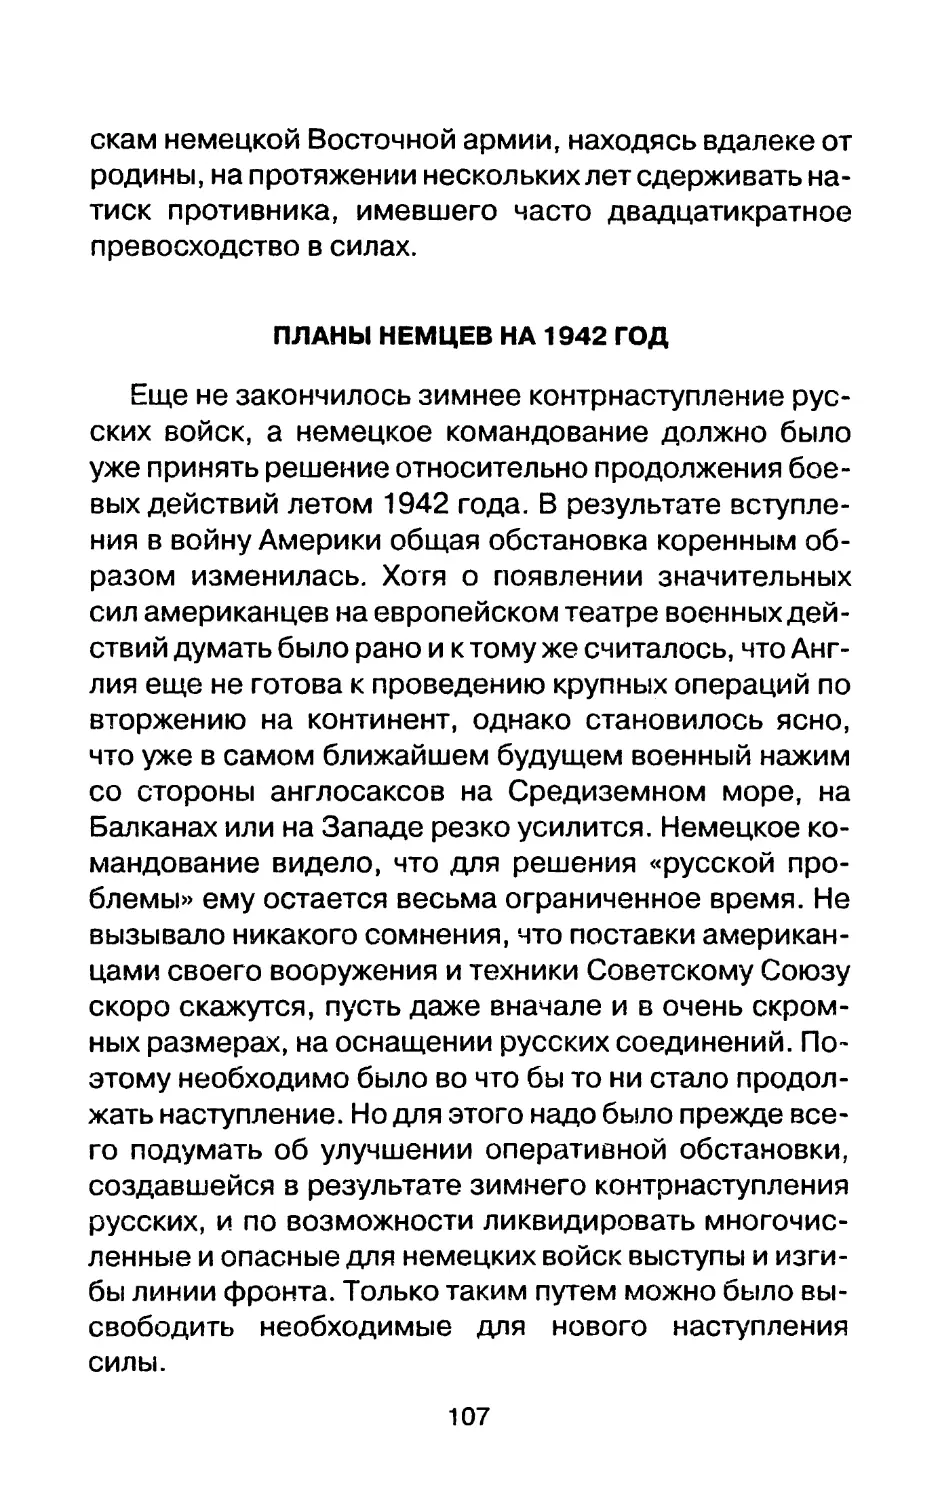 ПЛАНЫ НЕМЦЕВ НА 1942 ГОД